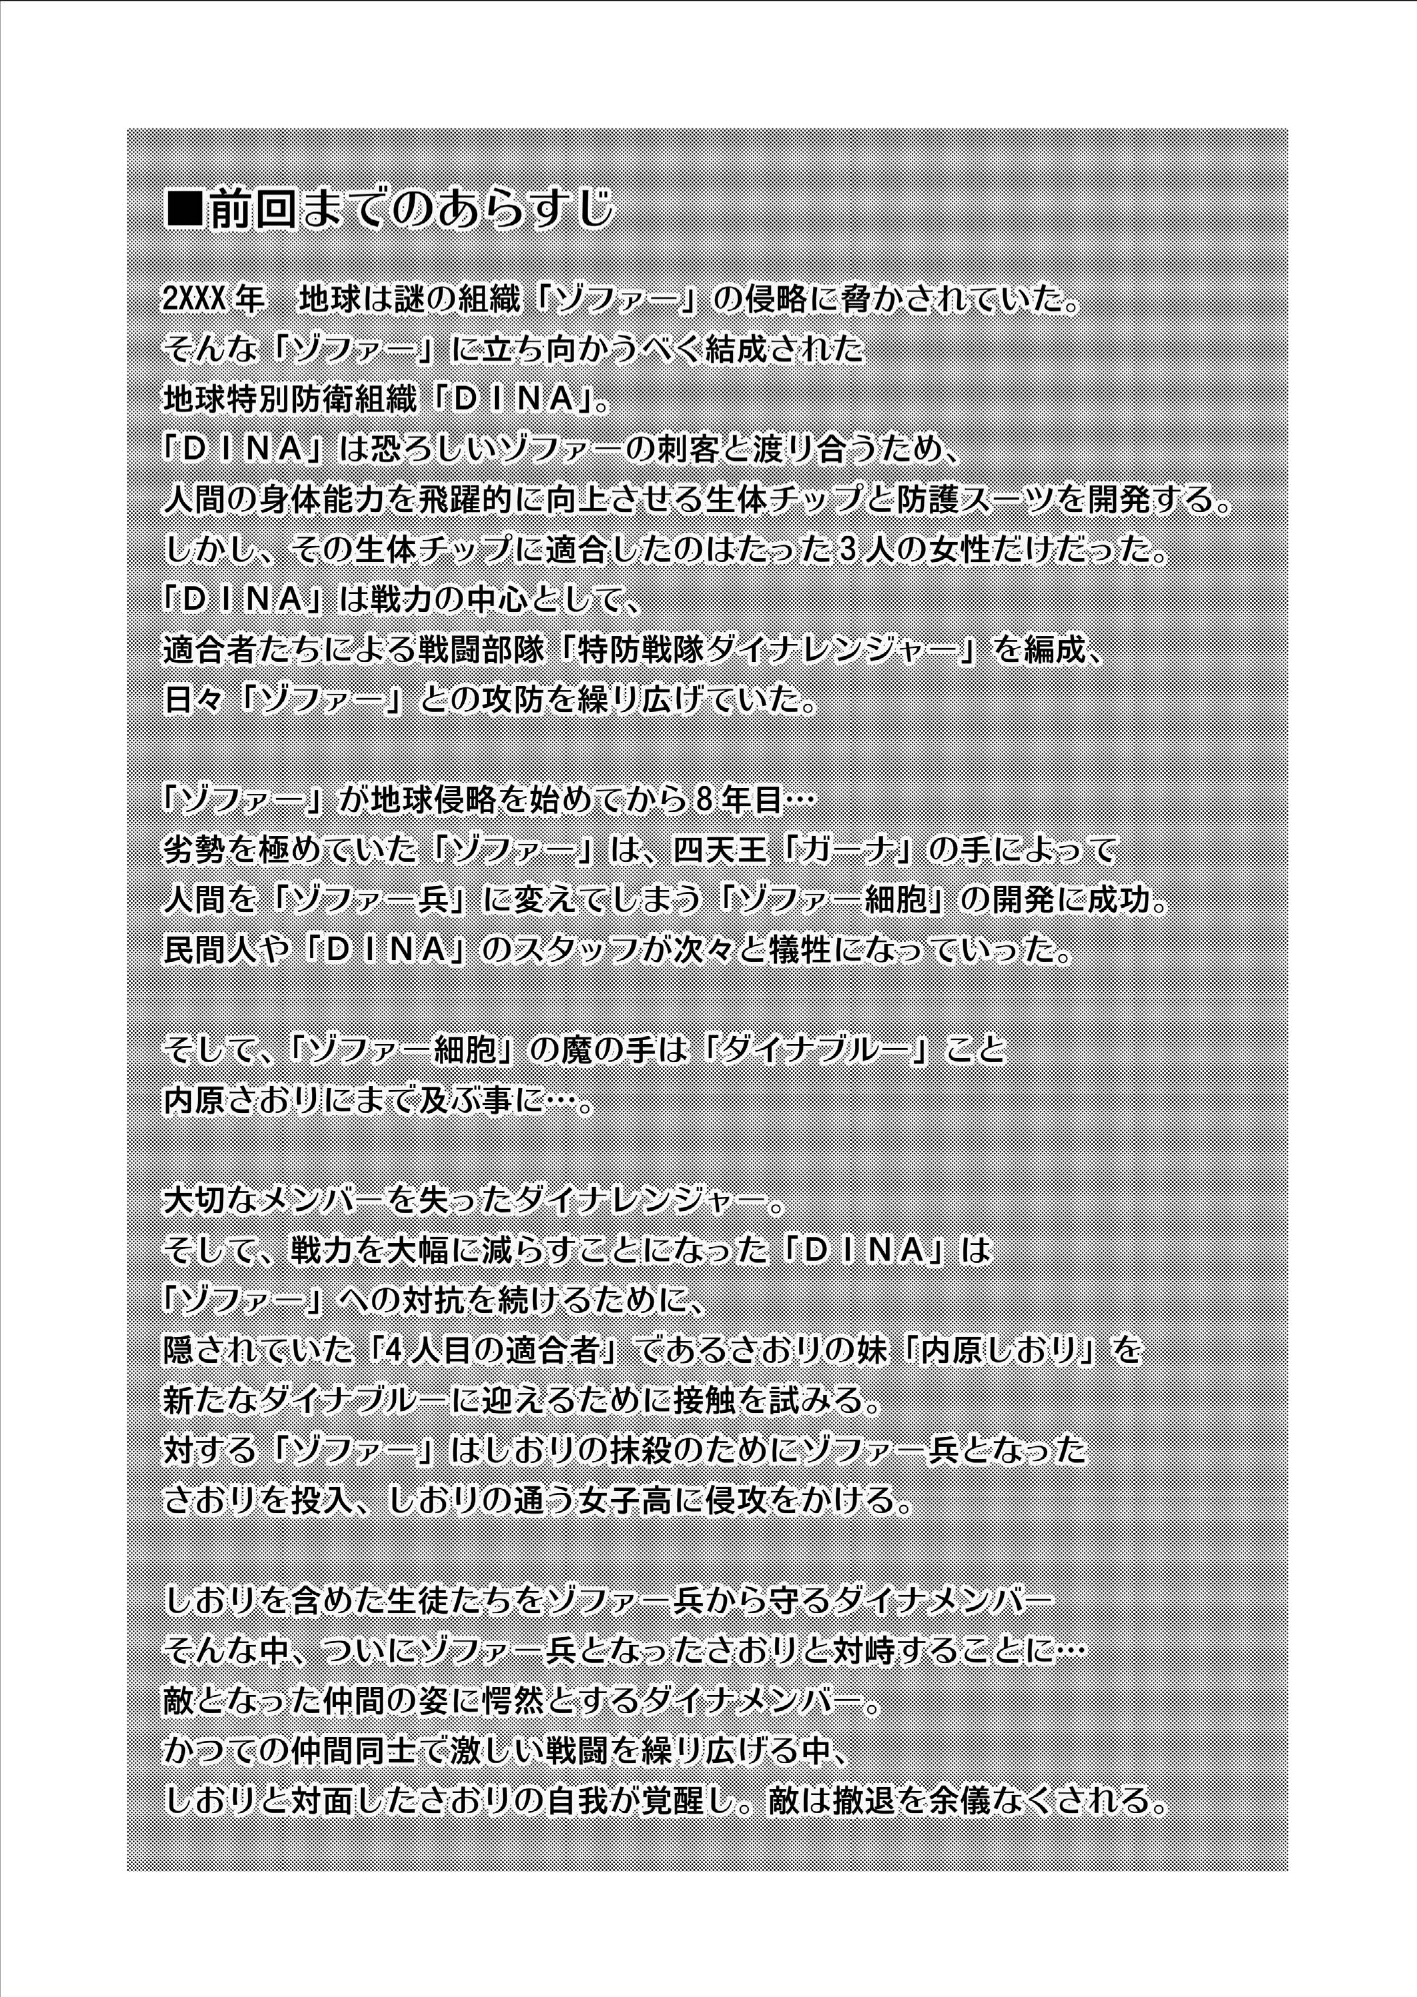 とくぼうせんたいダイナレンジャー〜ヒロインかいらくせんのうけいかく〜Vol。 09-11